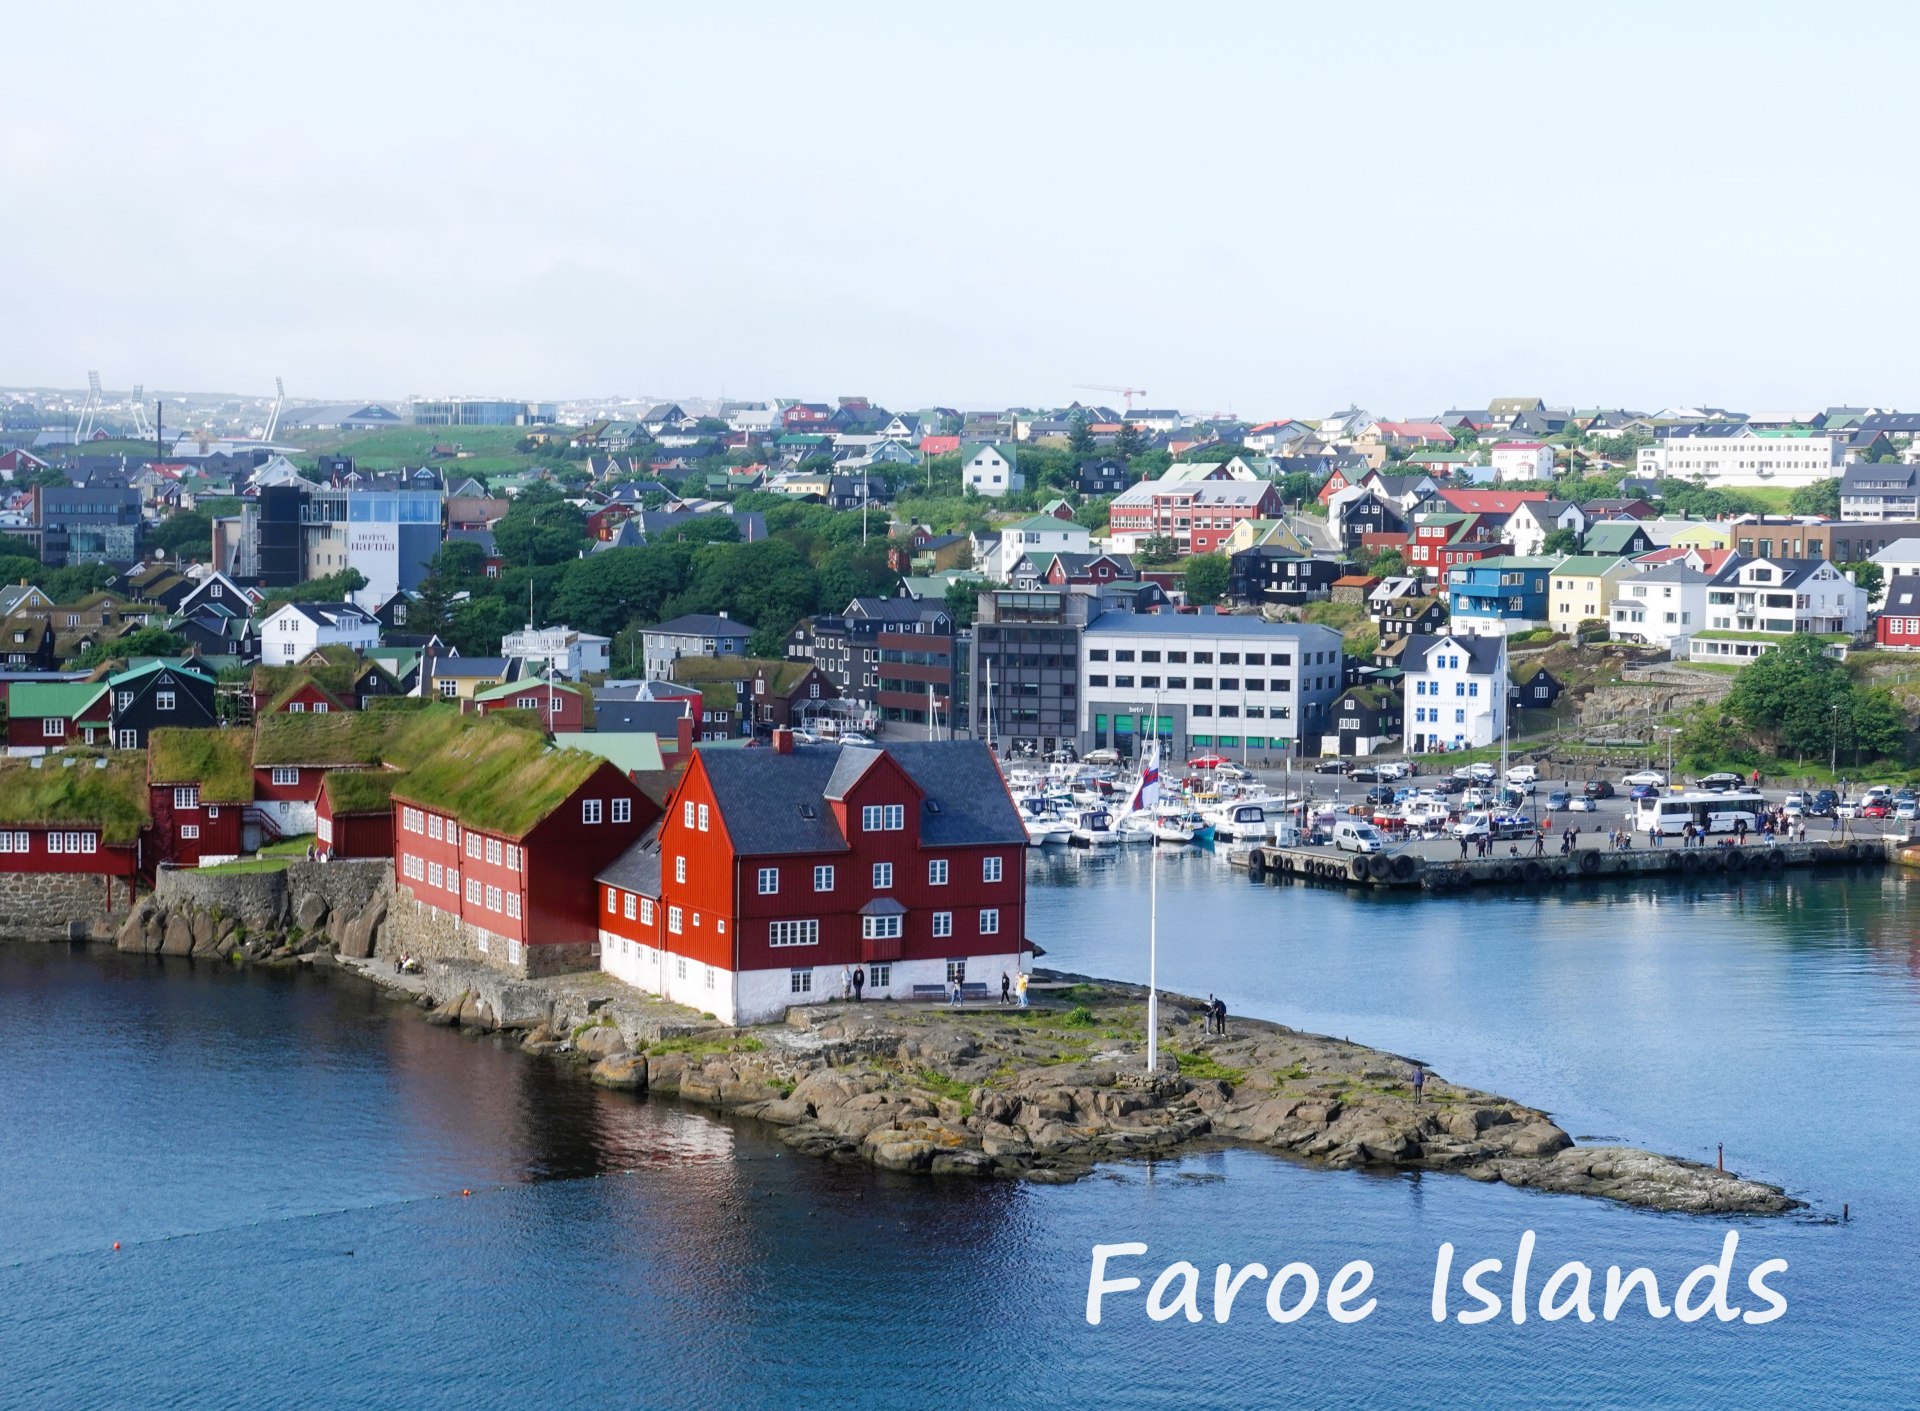 FaroeDSC01966